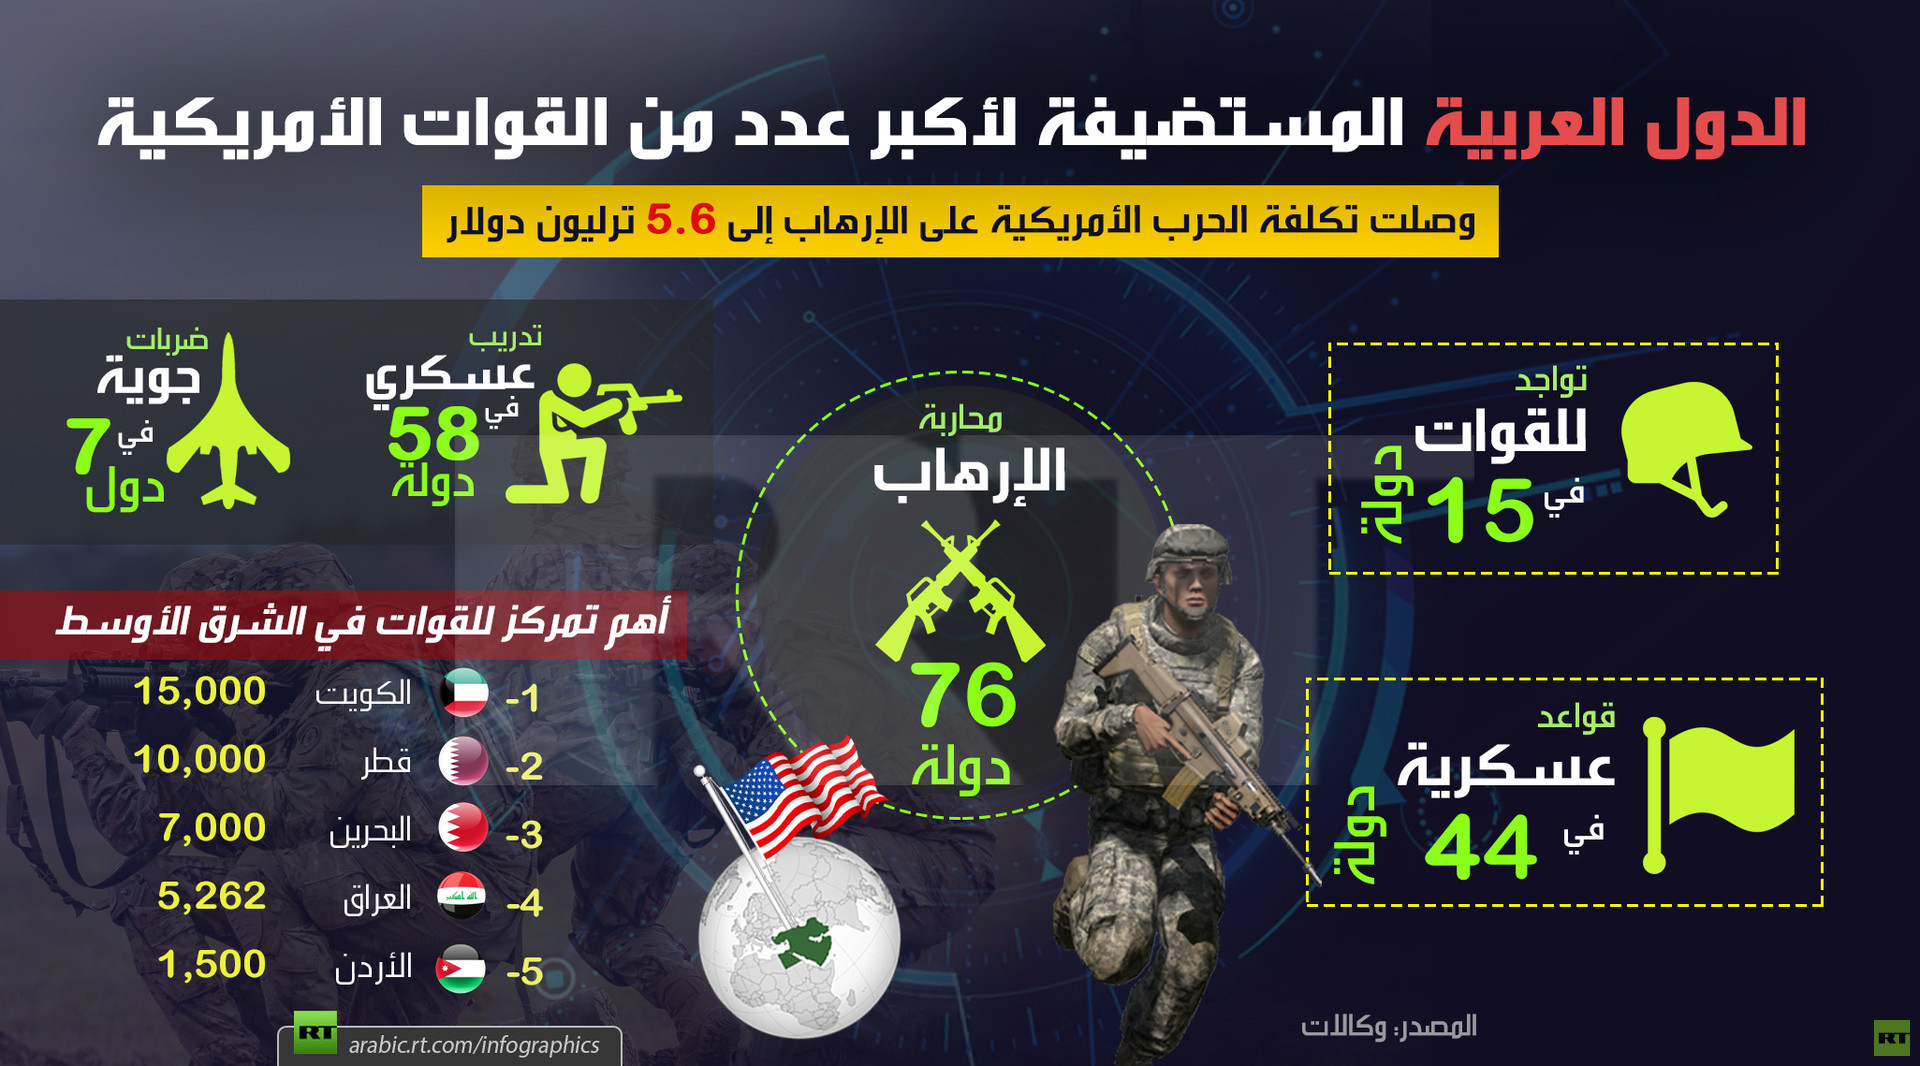 قائمة بالدول العربية المستضيفة لأكبر عدد من القوات الأمريكية.. وفاتورة باهظة الثمن